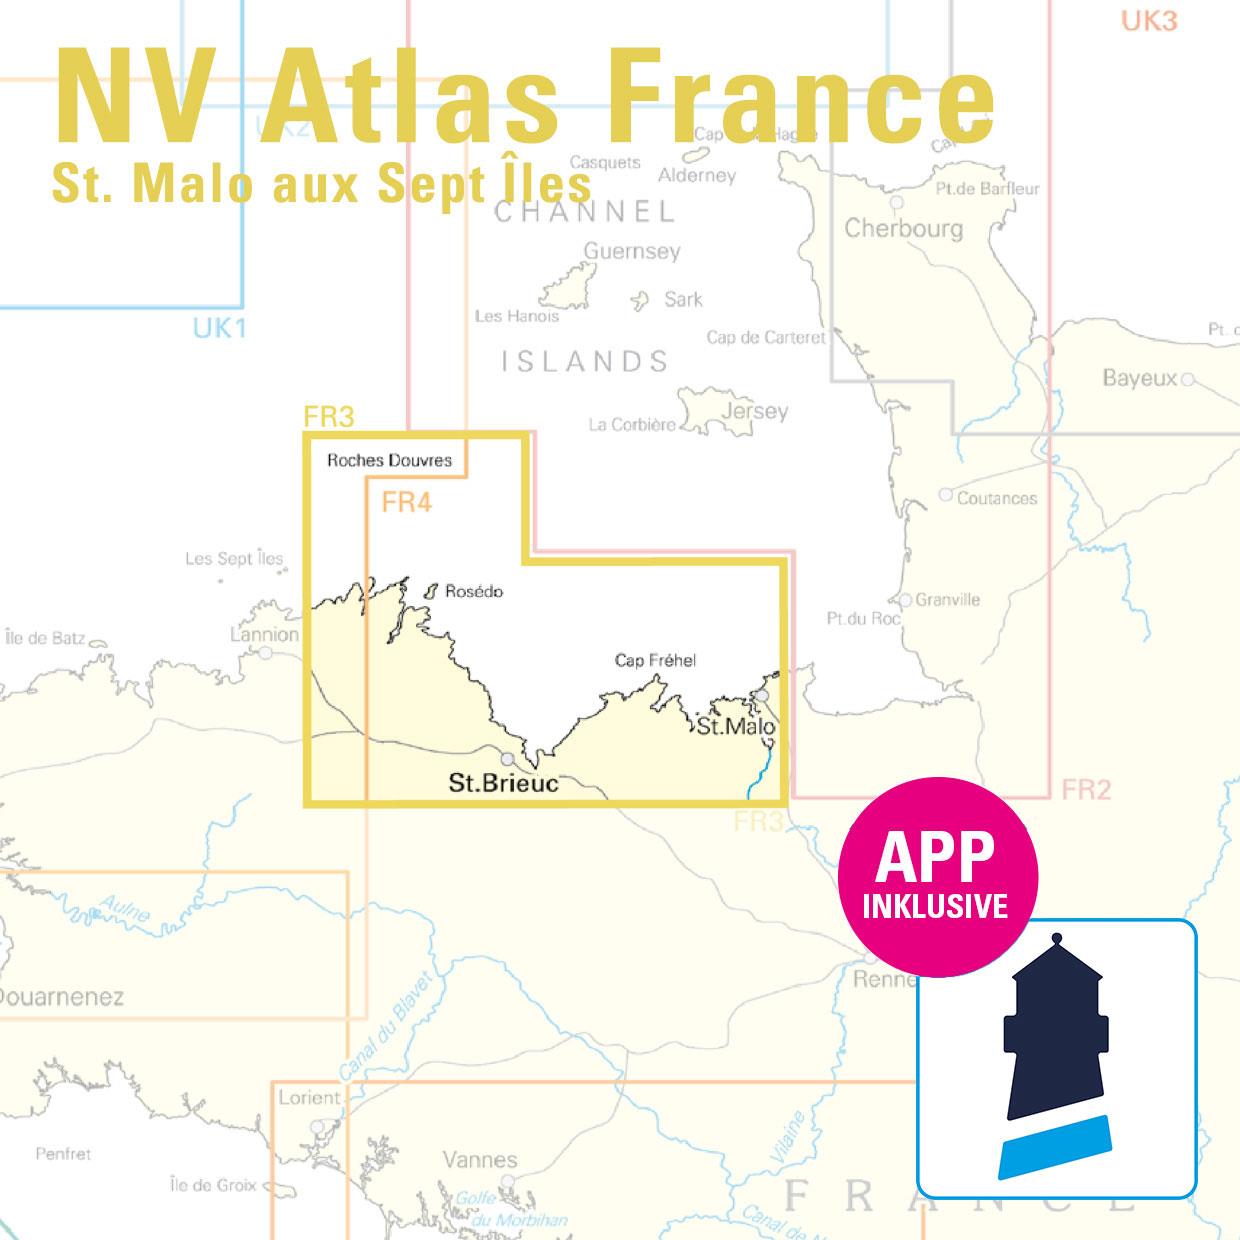 NV Charts France FR3 - St. Malo aux Sept Îles